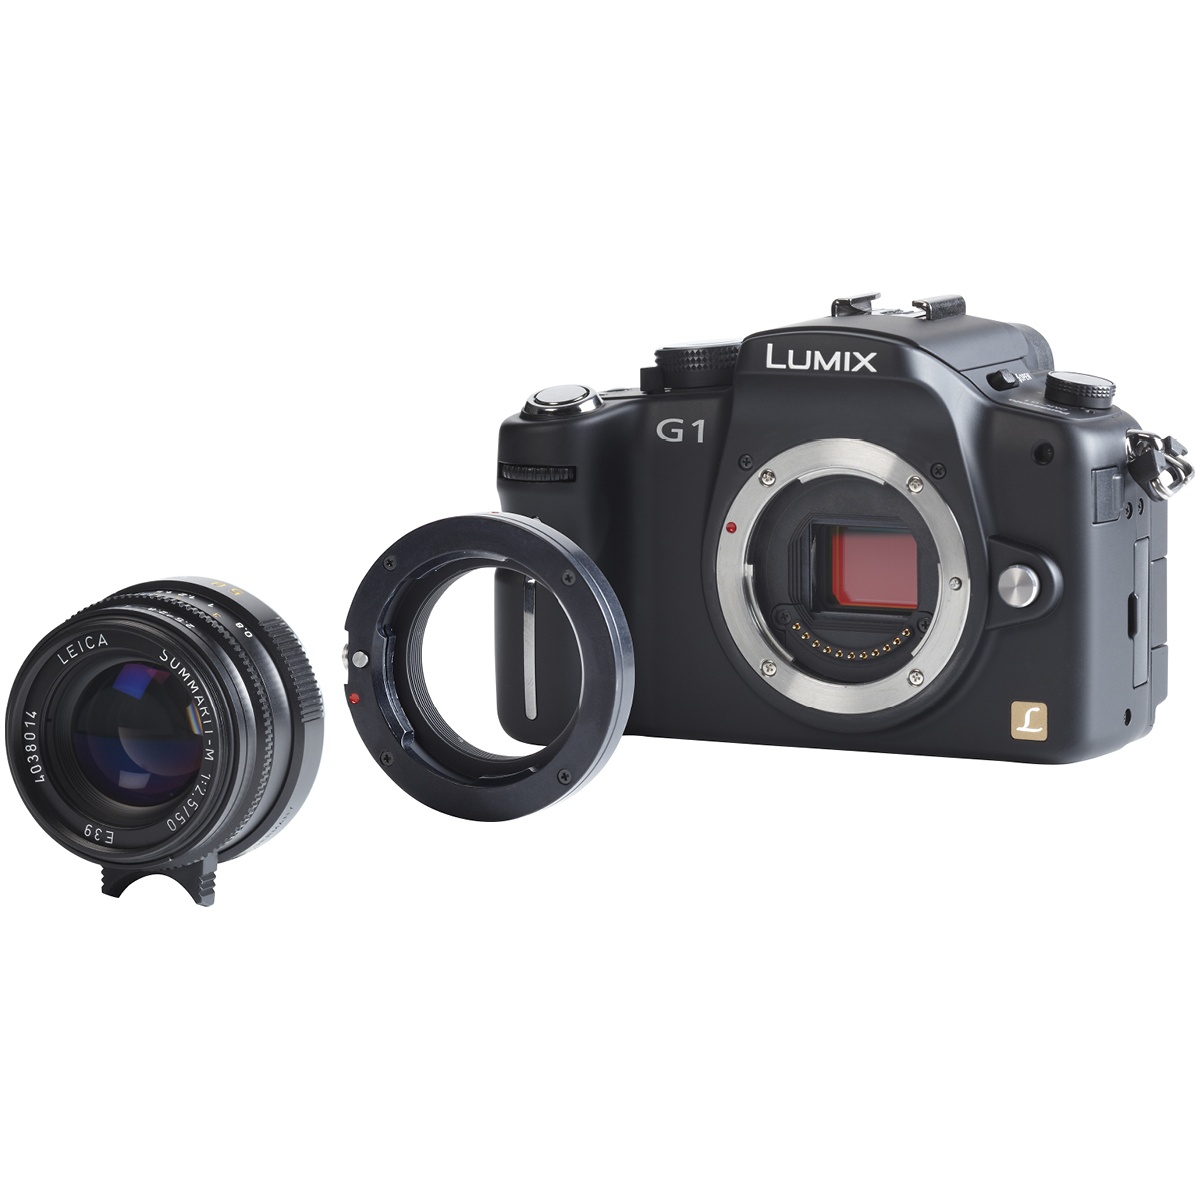 Novoflex Adapter Leica M-Objektive an MFT Kameras